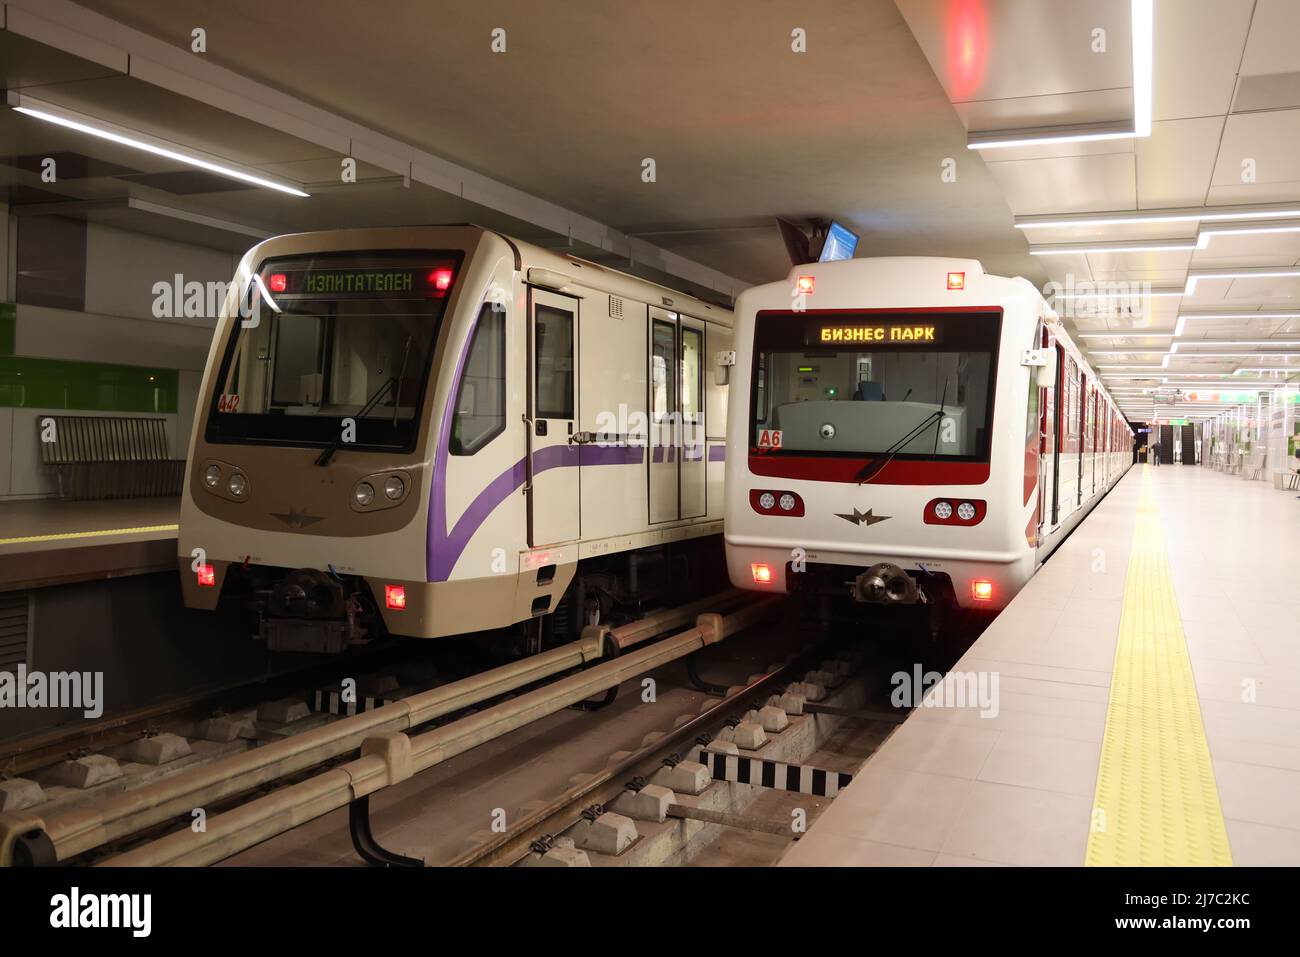 Zwei verschiedene U-Bahn-Züge, die in Russland hergestellt werden (die gleichen wie z.B. in der Moskauer U-Bahn), in der Business Park Station der U-Bahn in Sofia, Bulgarien Stockfoto